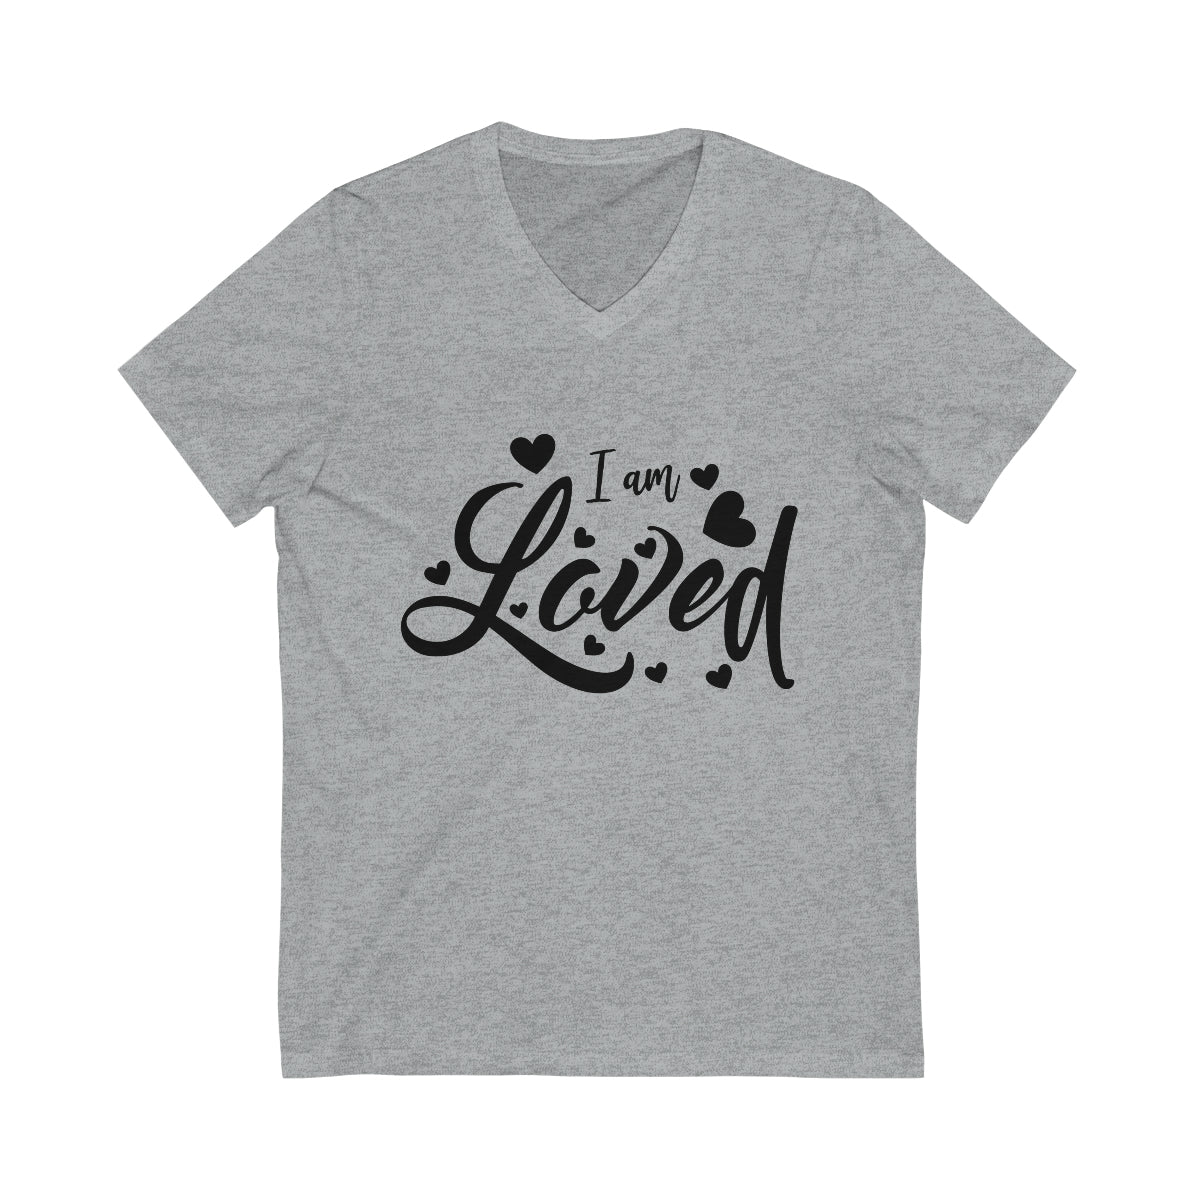 Affirmation Feminist Pro Choice T-Shirt Unisex Size - I am Loved Printify